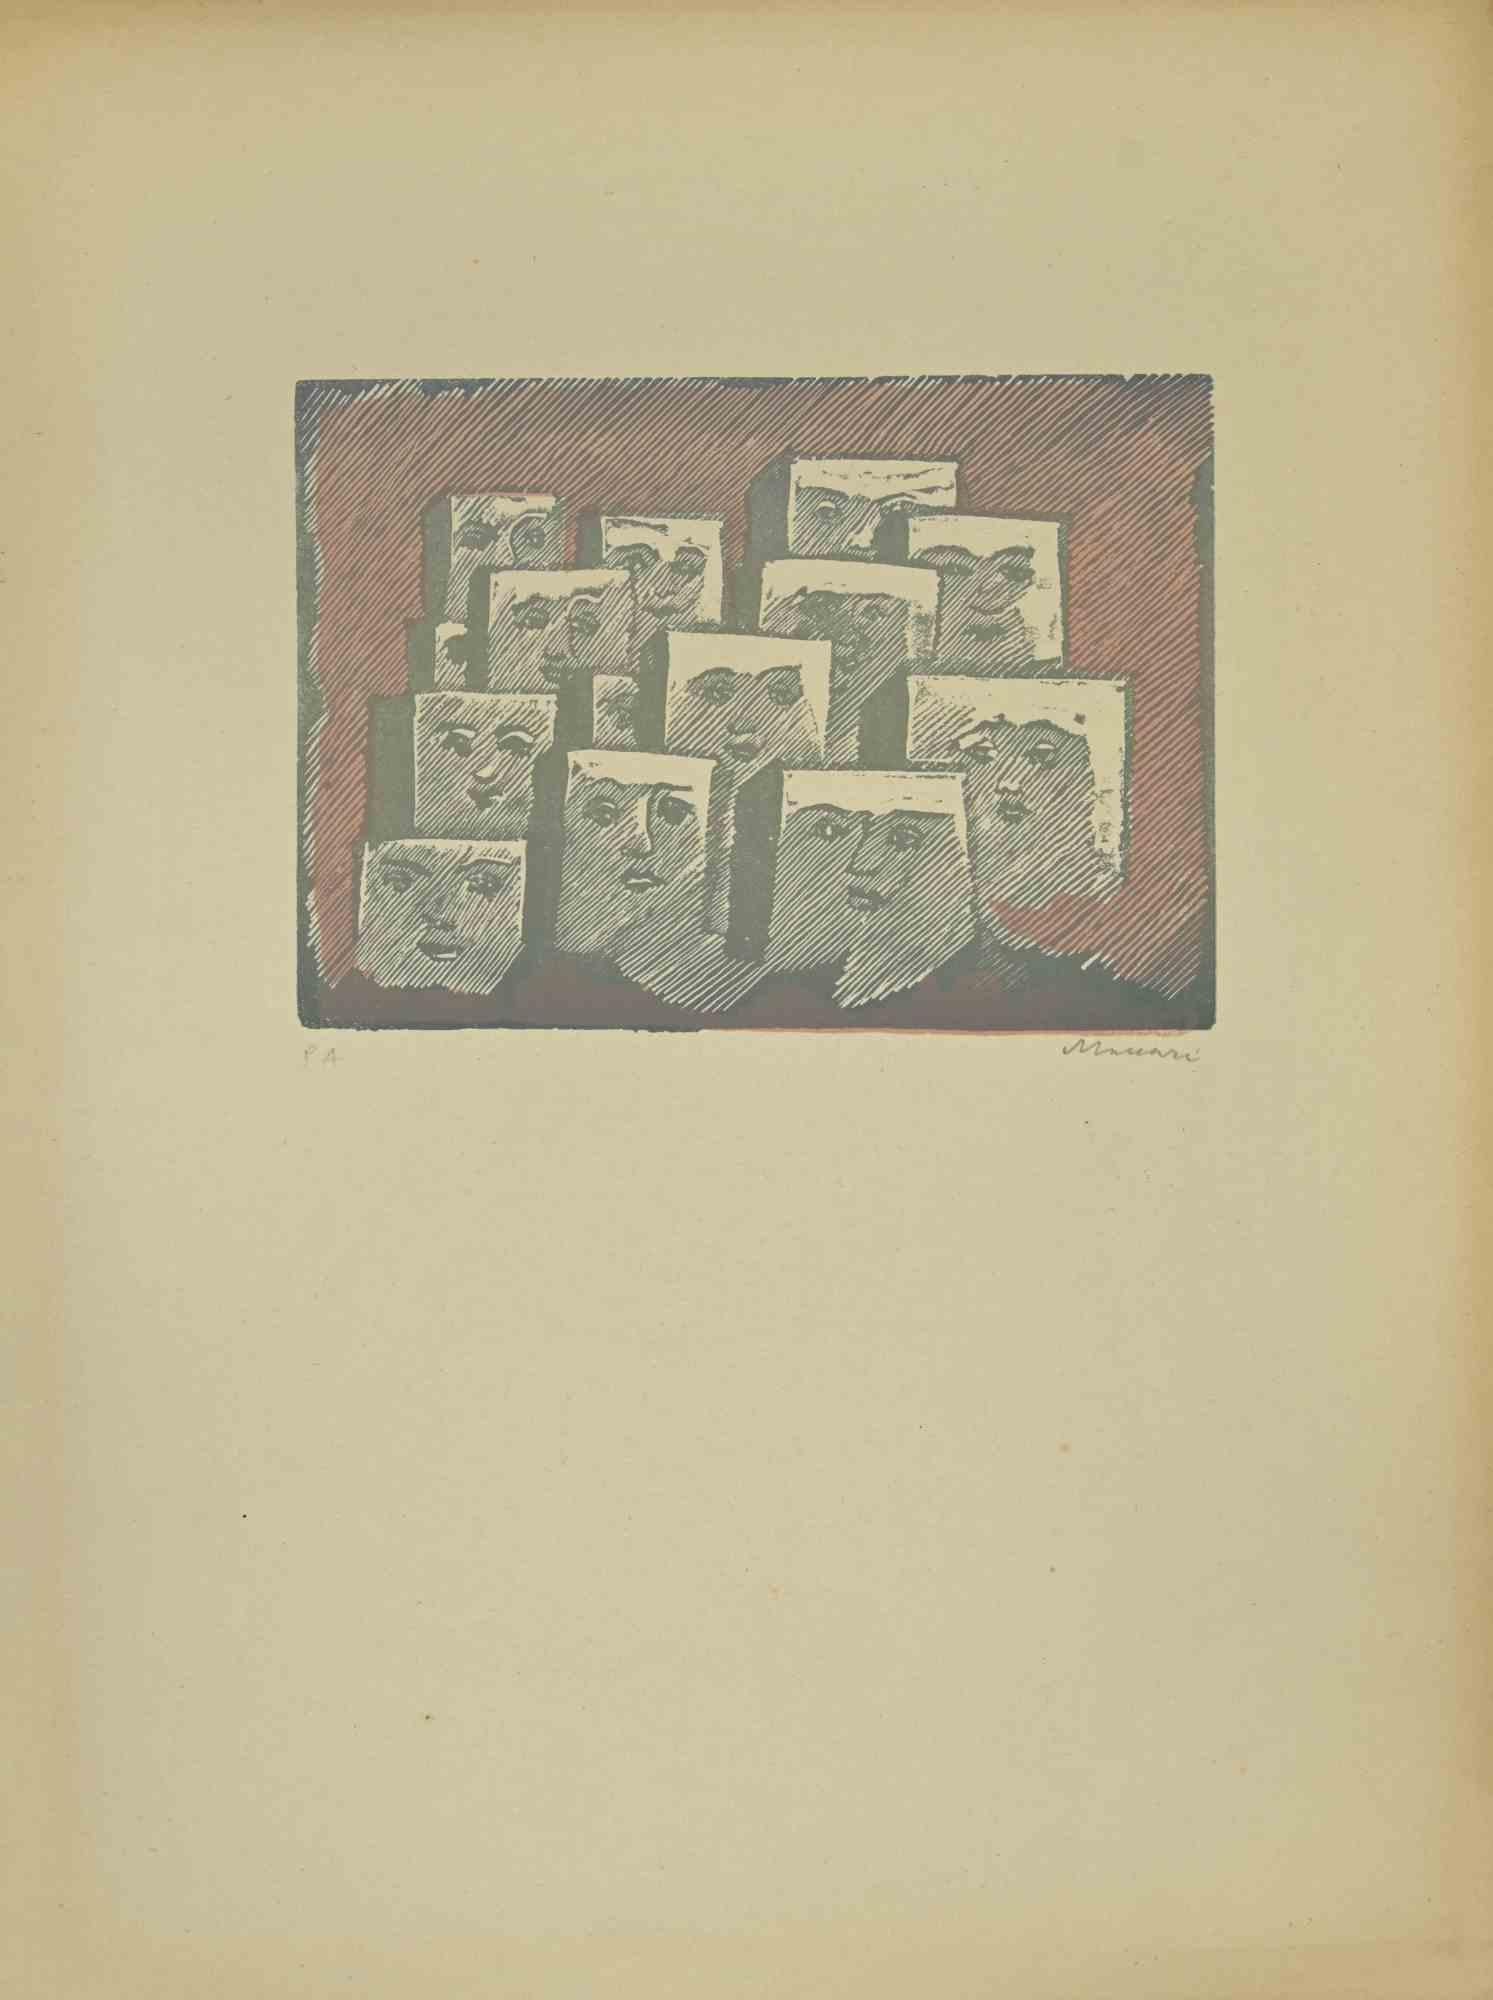 Faces est une linogravure réalisée par Mino Maccari dans les années 1940.

50 x 30 cm.

Signé à la main dans la partie inférieure droite. Édition de 12 exemplaires.

Référence ; Cat. Meloni , pag 367, n.1741.

Bonnes conditions.


Mino Maccari